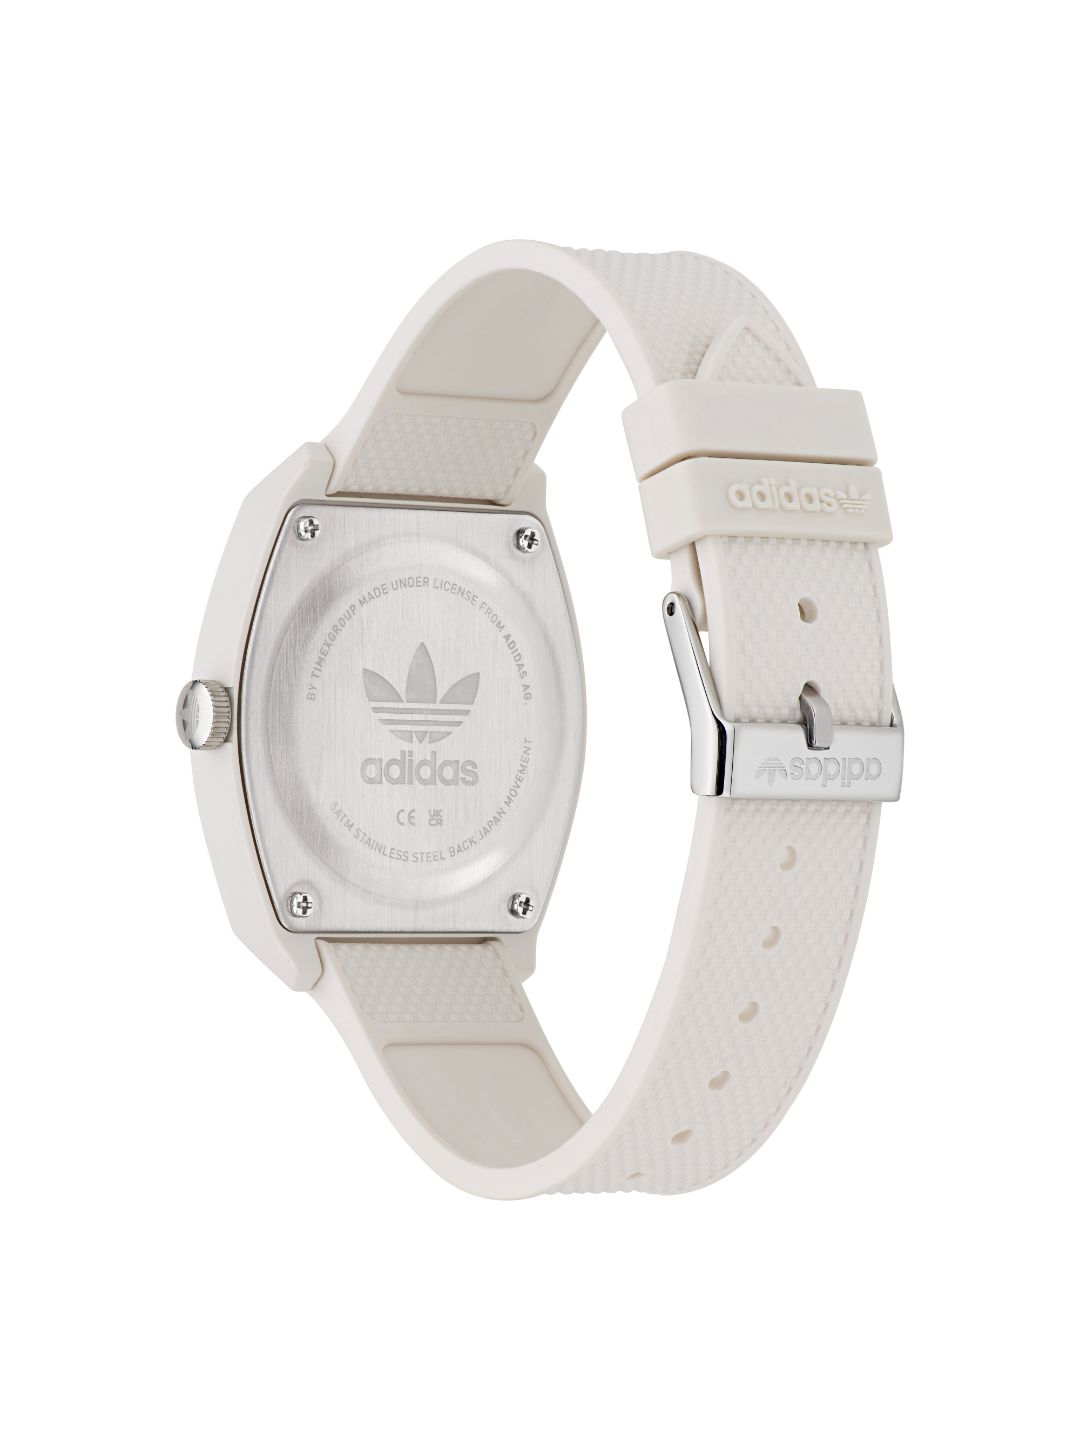 Adidas Originals White Dial Unisex Watch - AOST23048